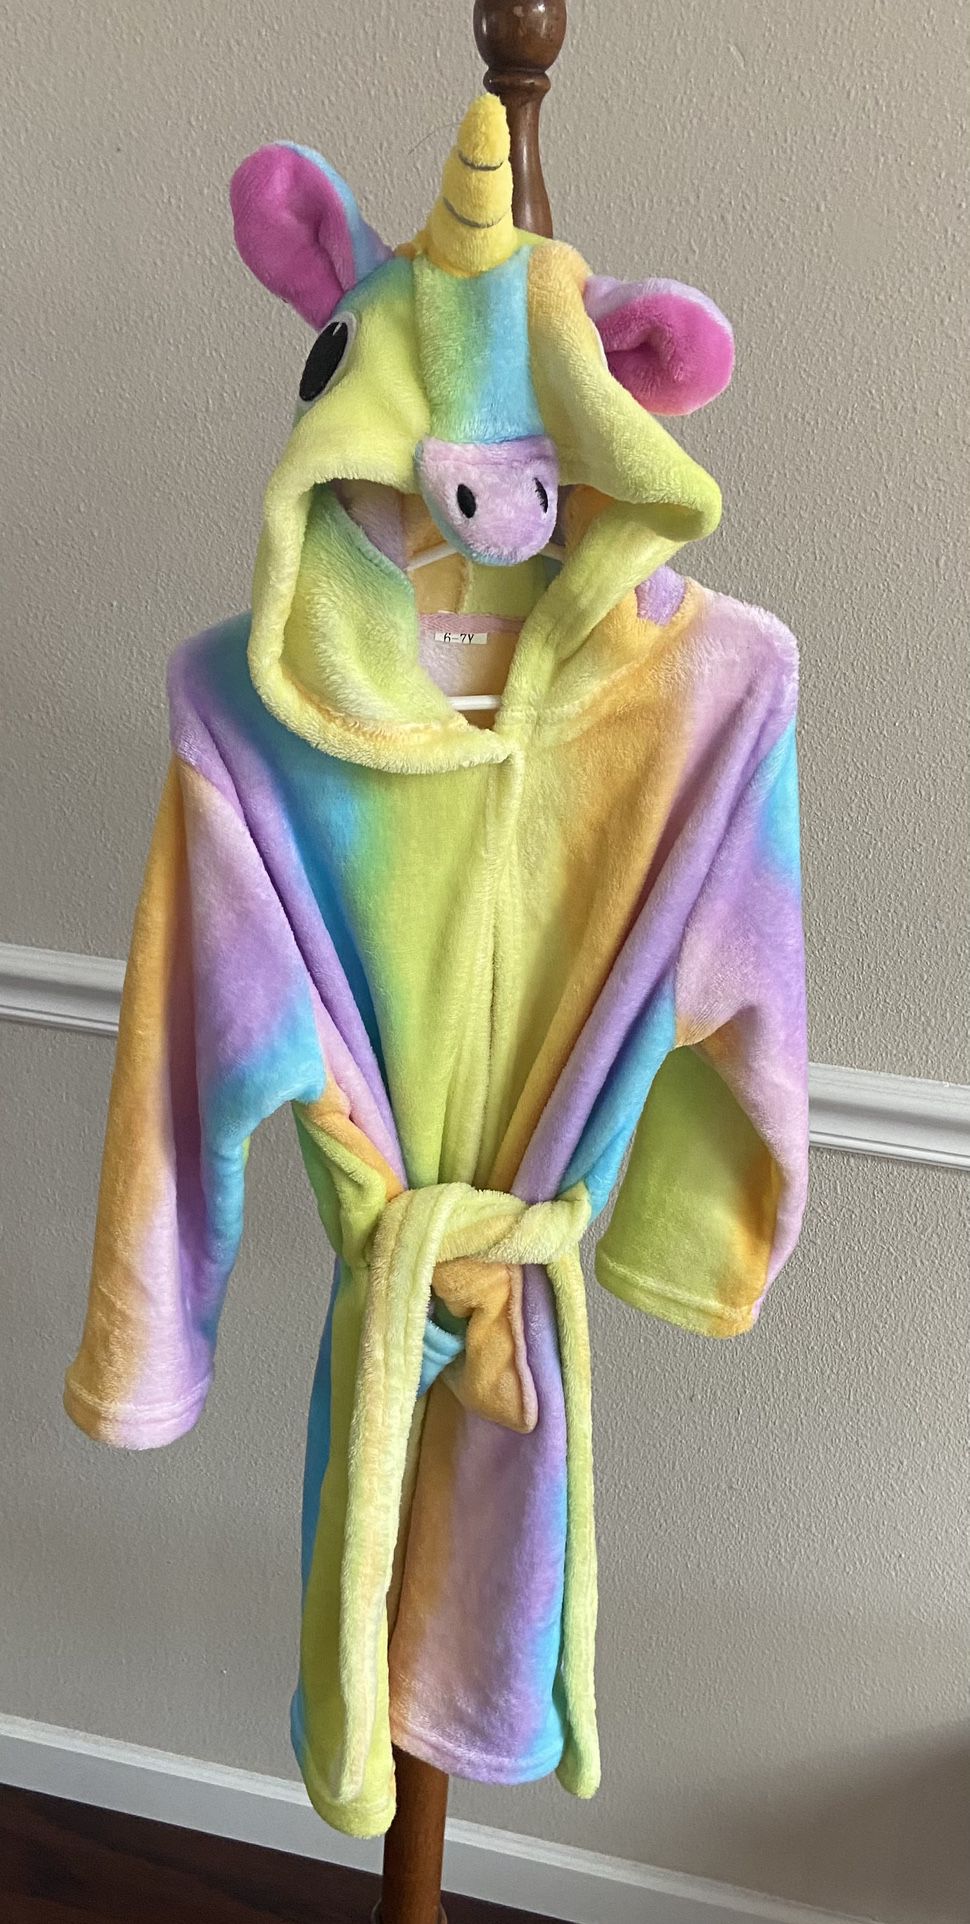 Child Size 6-7 Yo Unicorn Robe Just $3